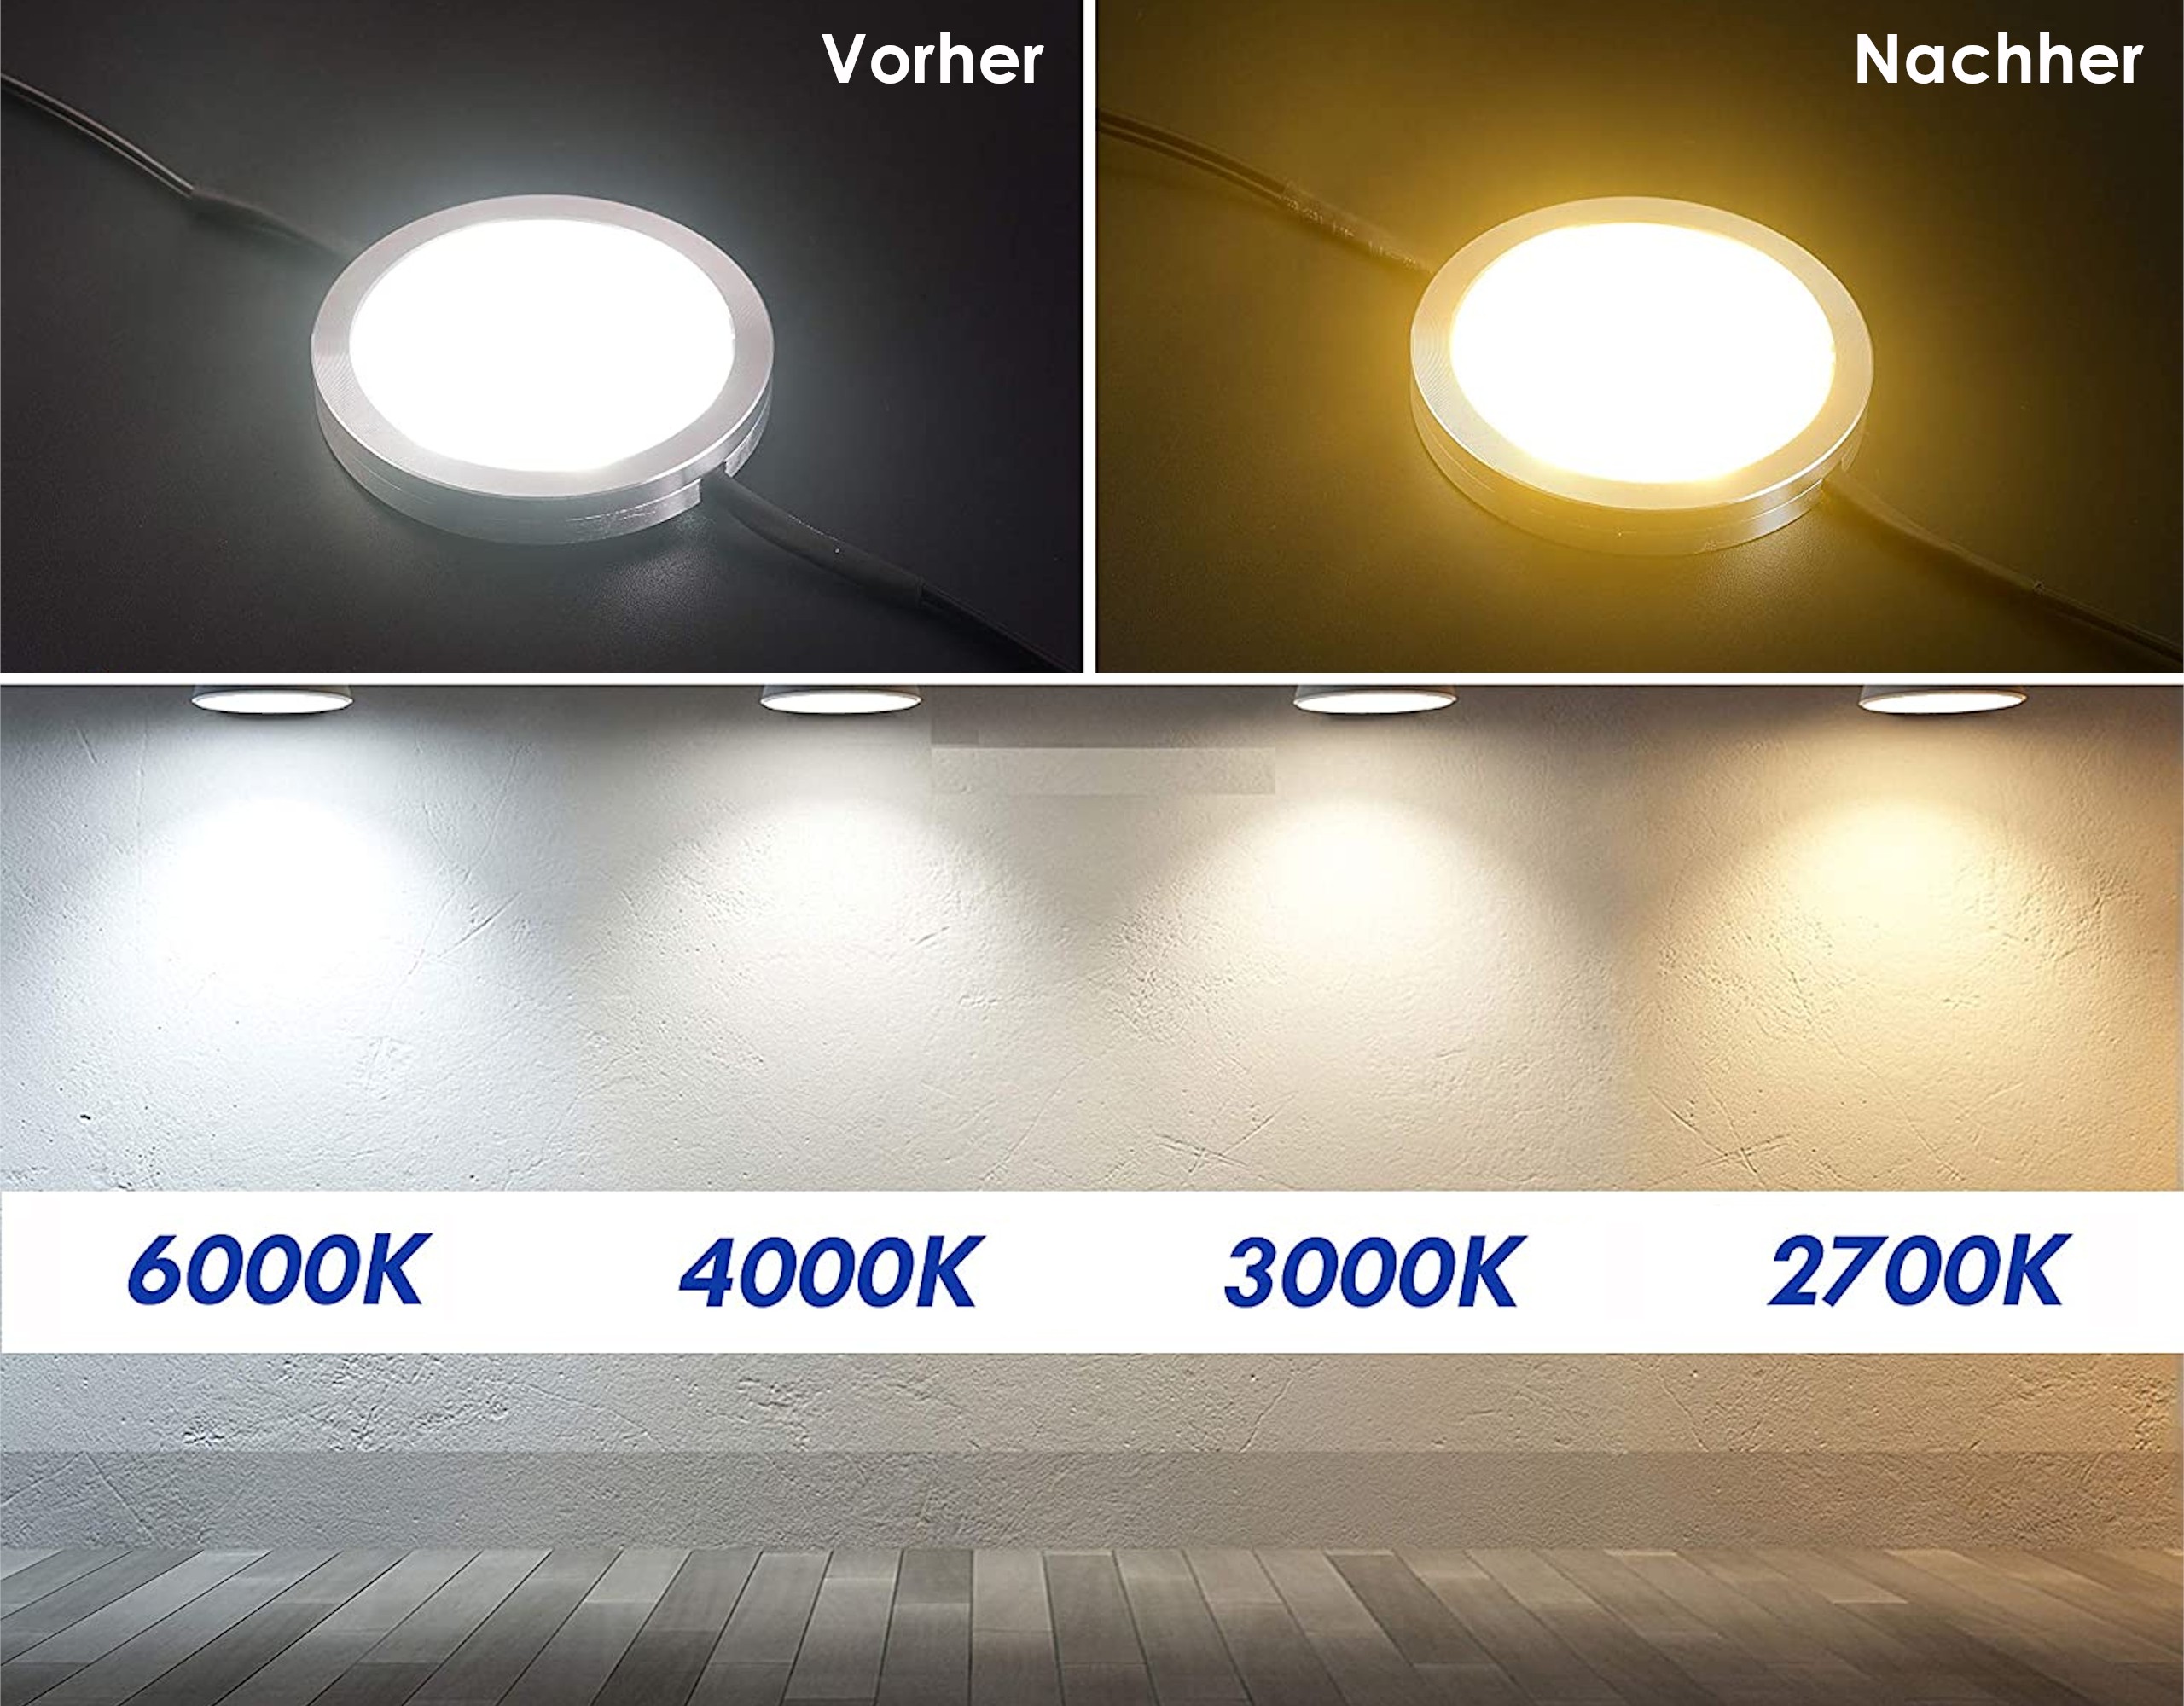 Selbstklebende Farbfolien für LED Lampen, ⌀7 CM Kreiszuschnitt, Warmweiß Farbfilter zur Farbkorrektur, Tageslicht zu Glühlicht, Filterset mit 9 Stück